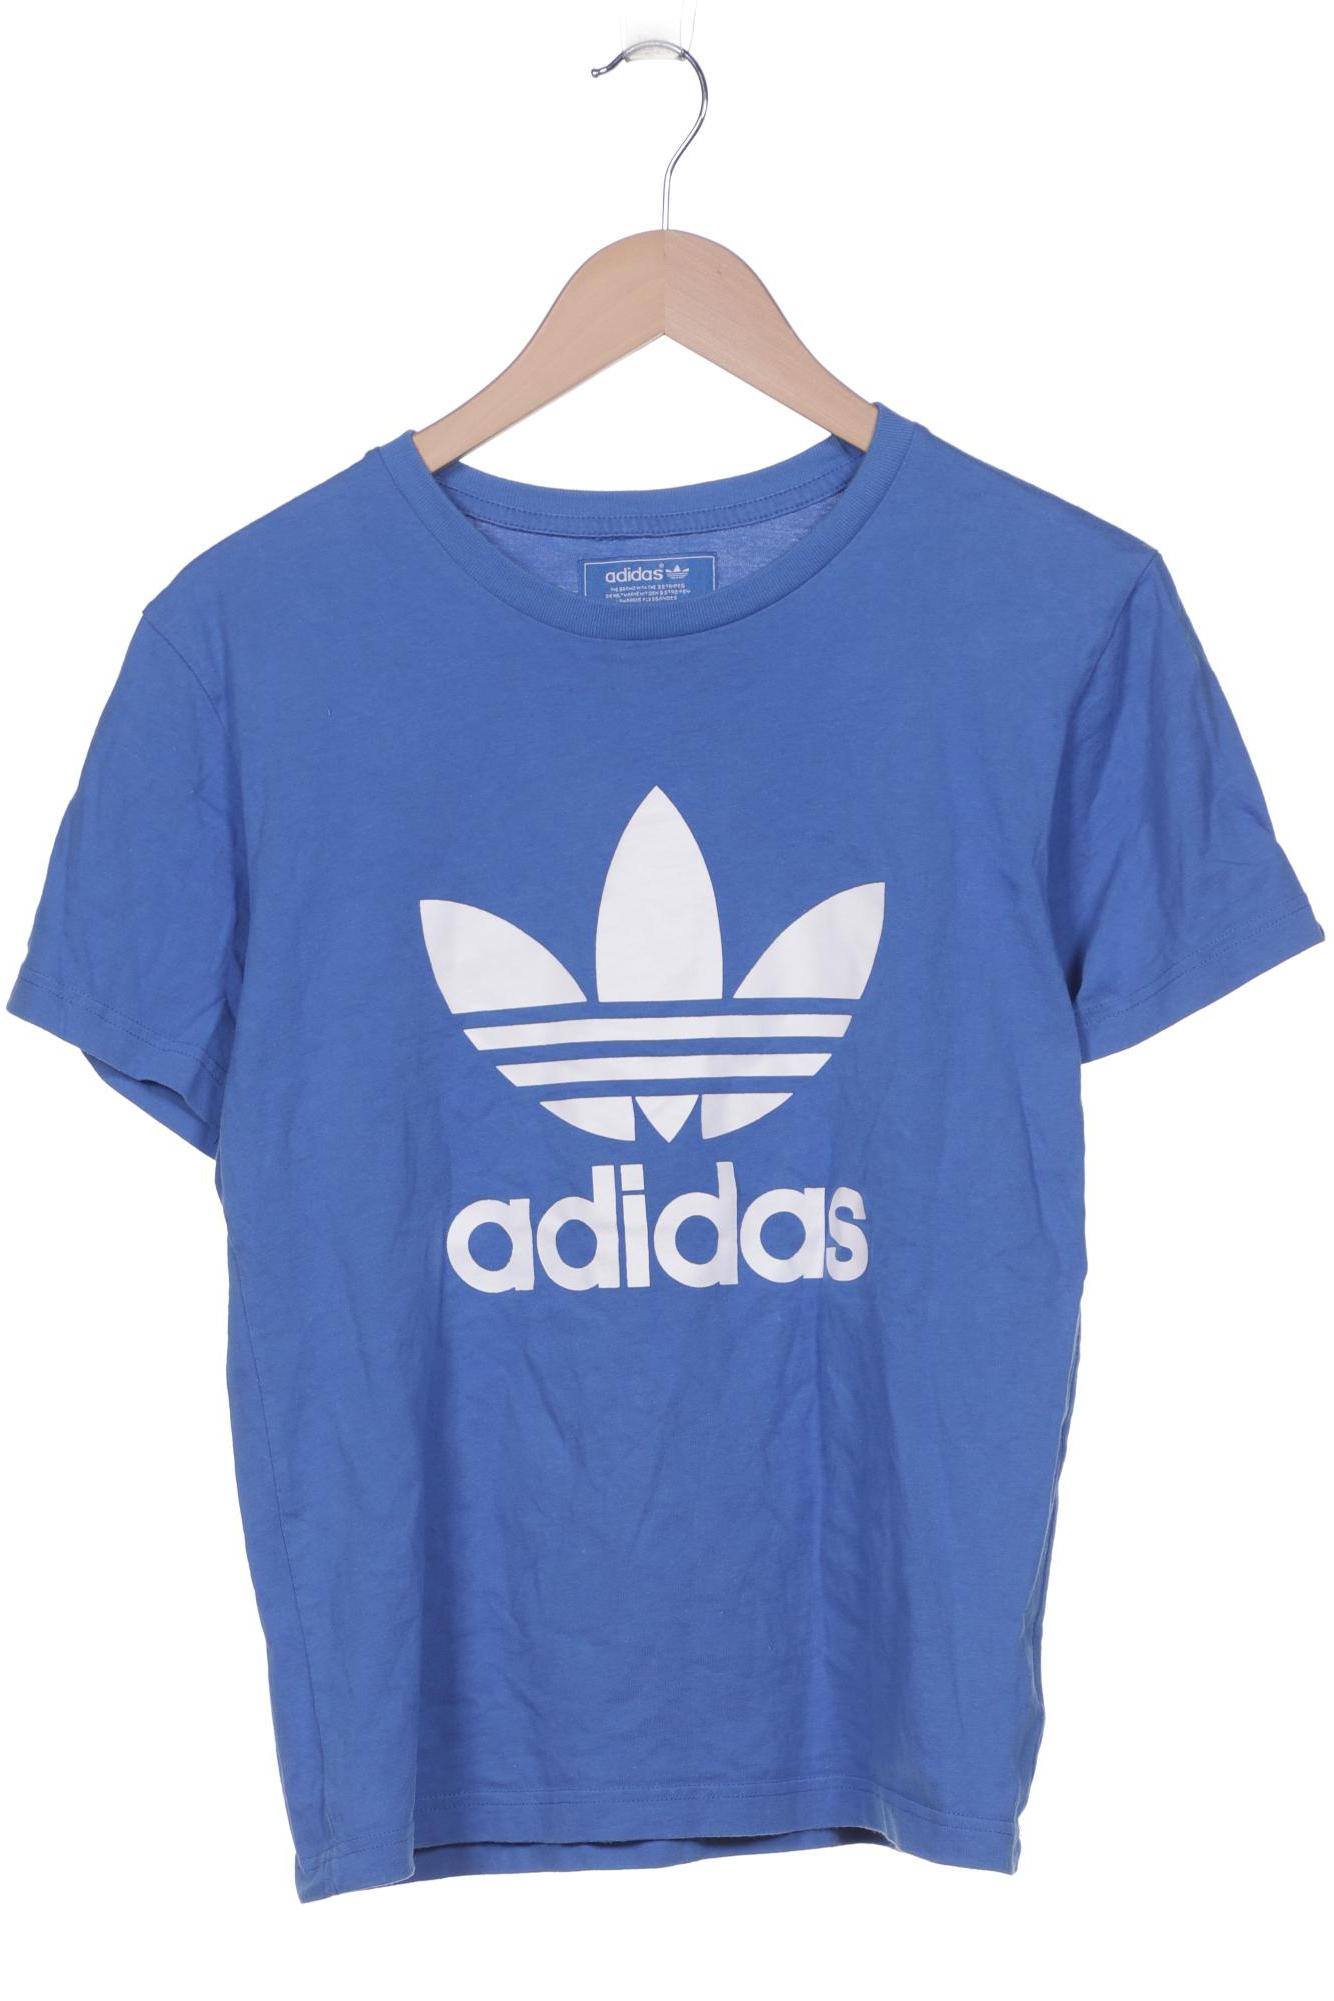 adidas Originals Herren T-Shirt, blau, Gr. 48 von adidas Originals